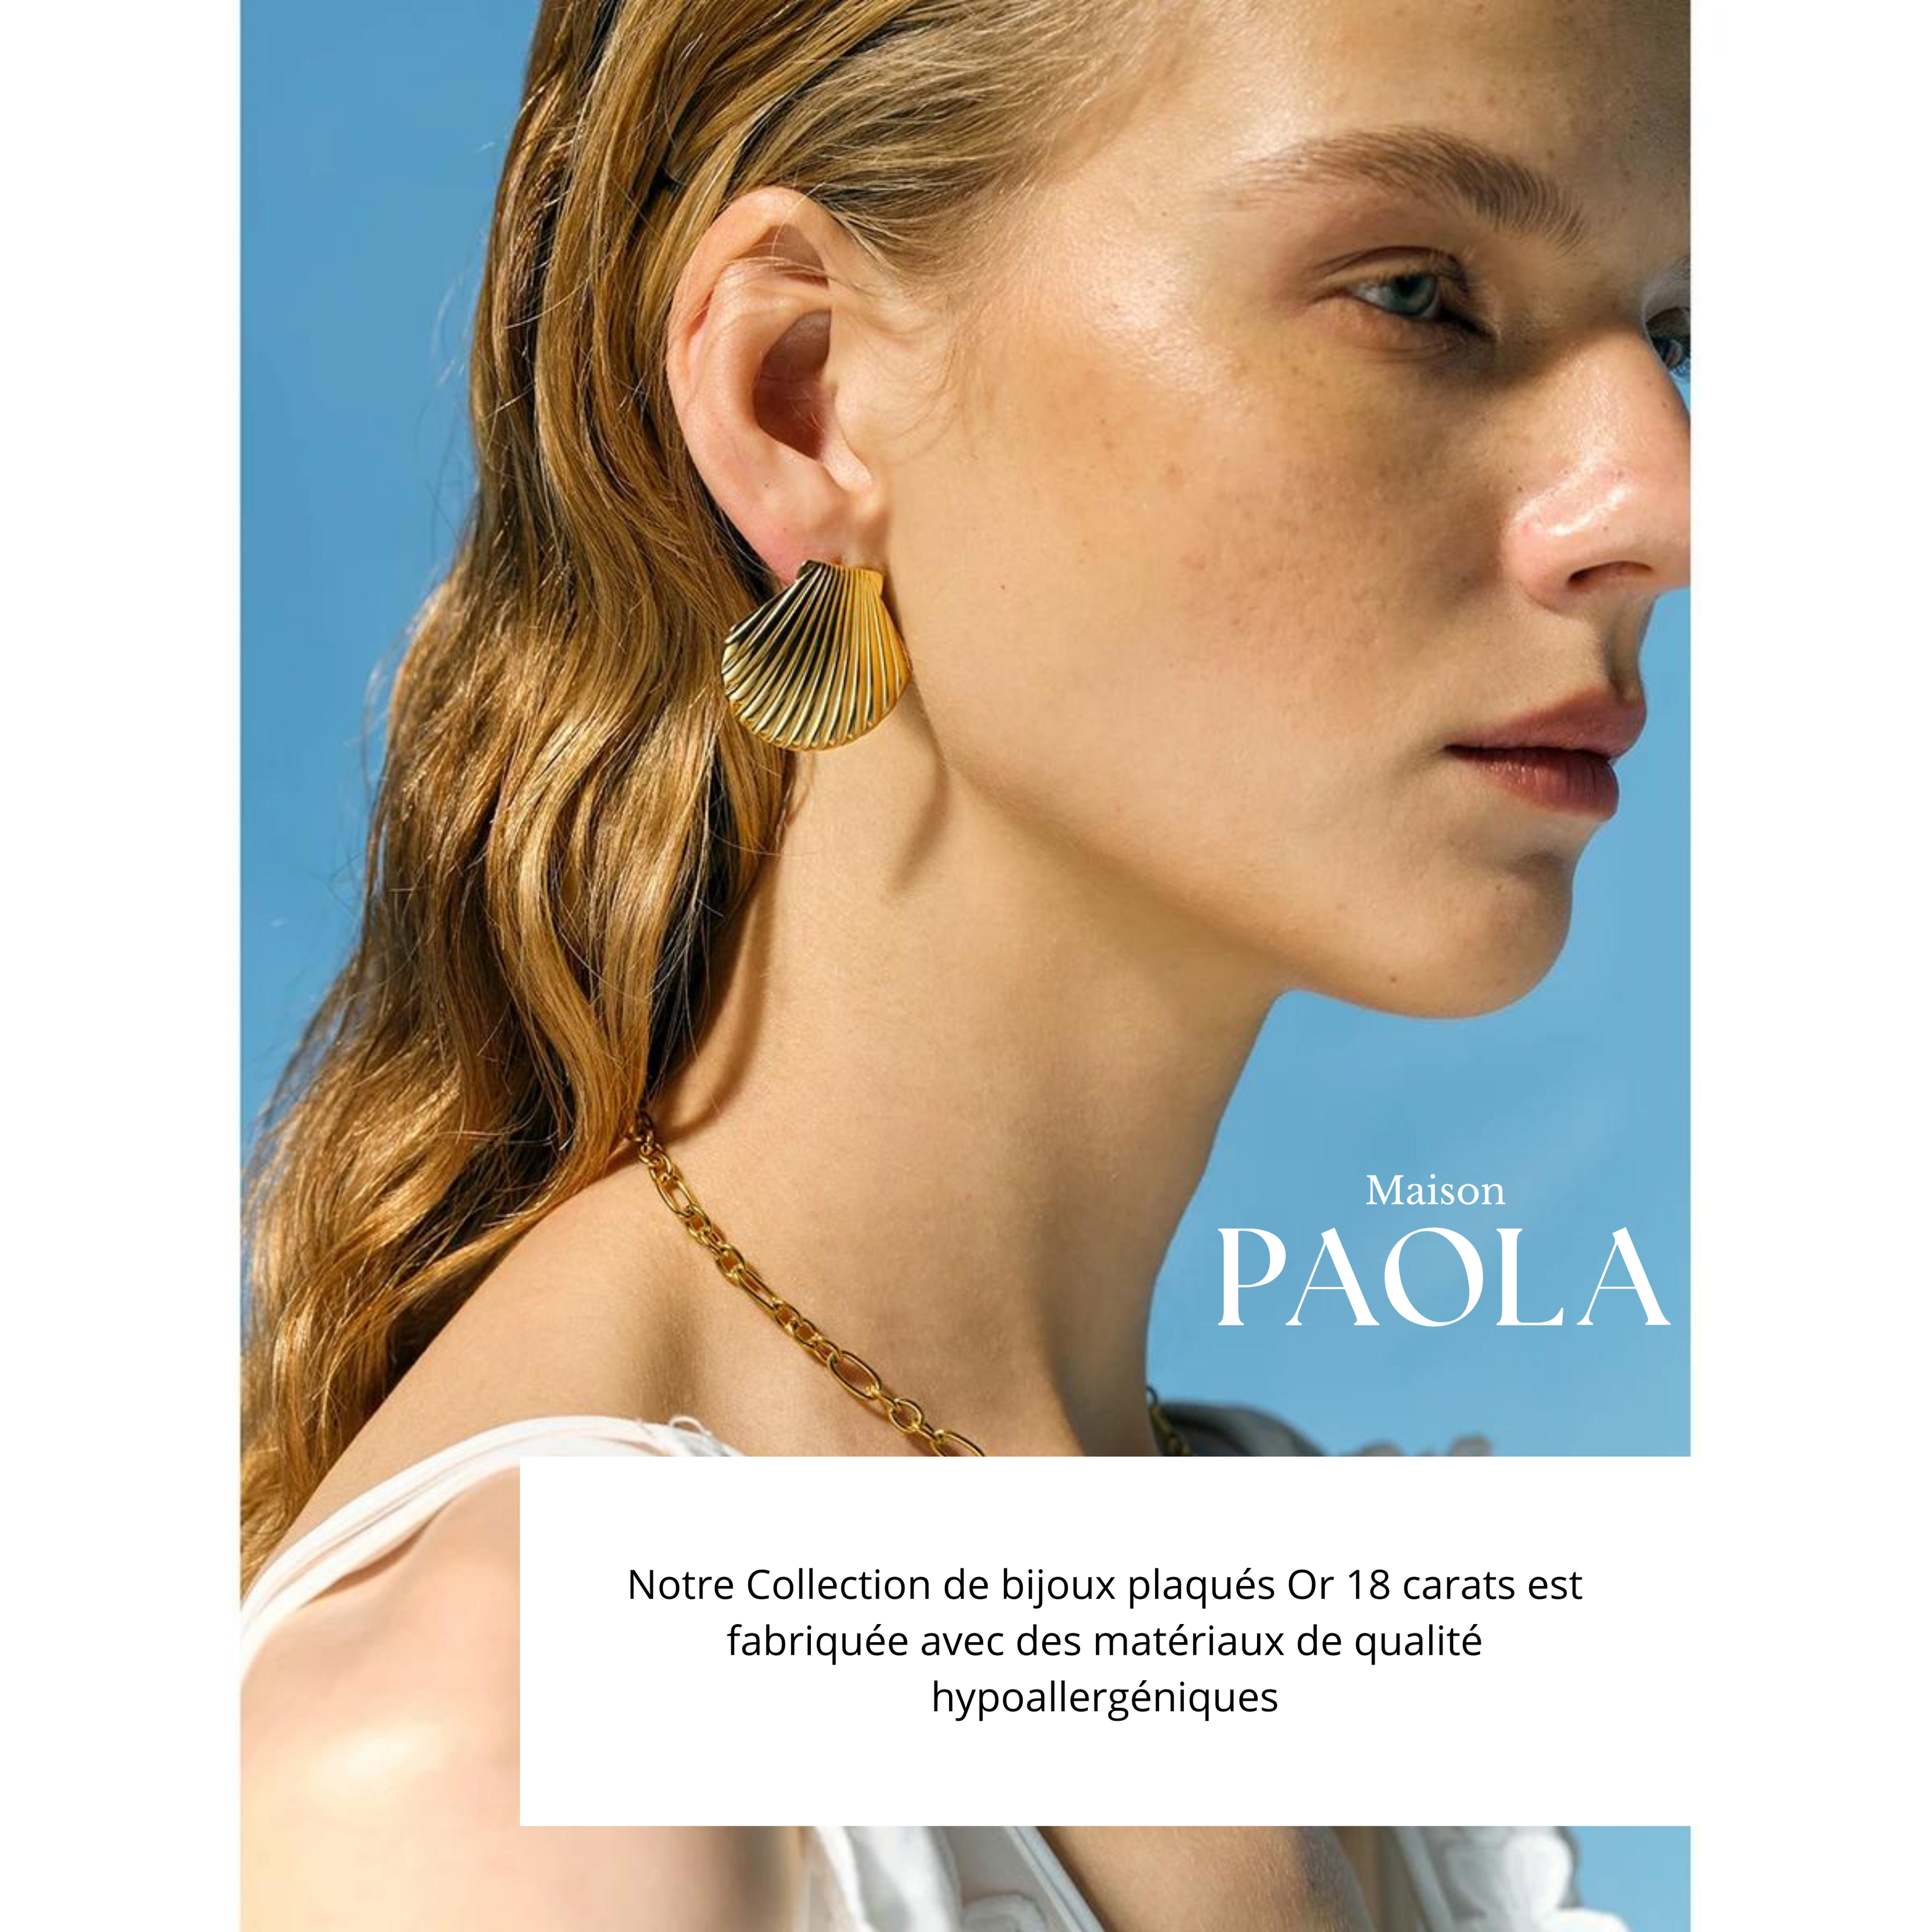 Affiche Maison Paola Femme boucle d'oreille coquillage fond bleu texte plaqué or 18 carats hypoallergéniques